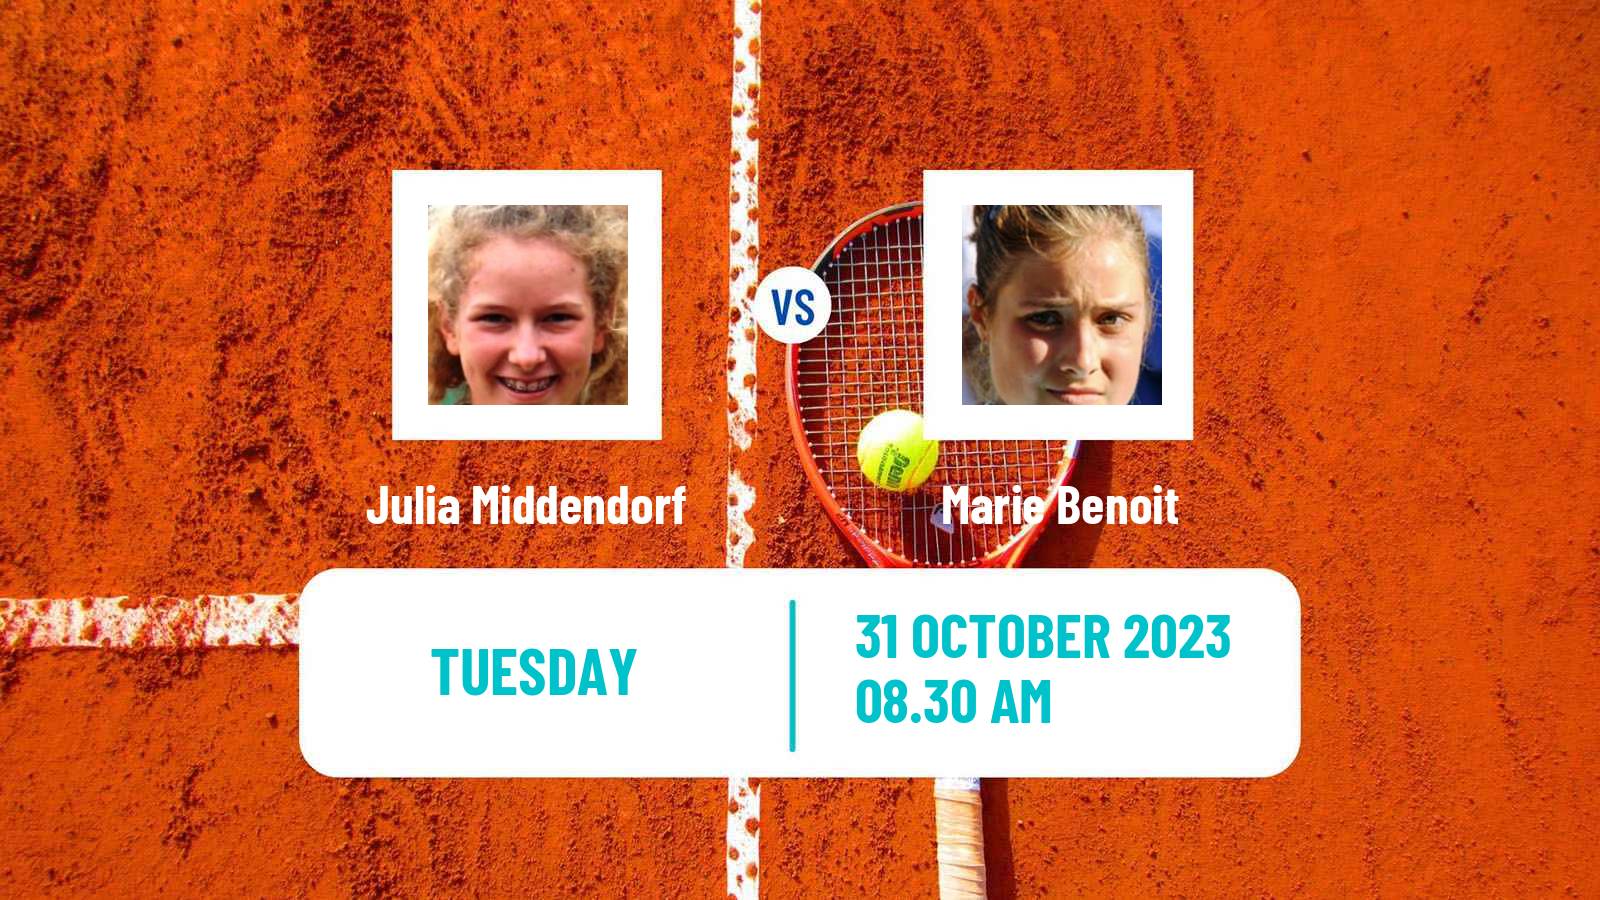 Tennis ITF W25 Sunderland Women Julia Middendorf - Marie Benoit